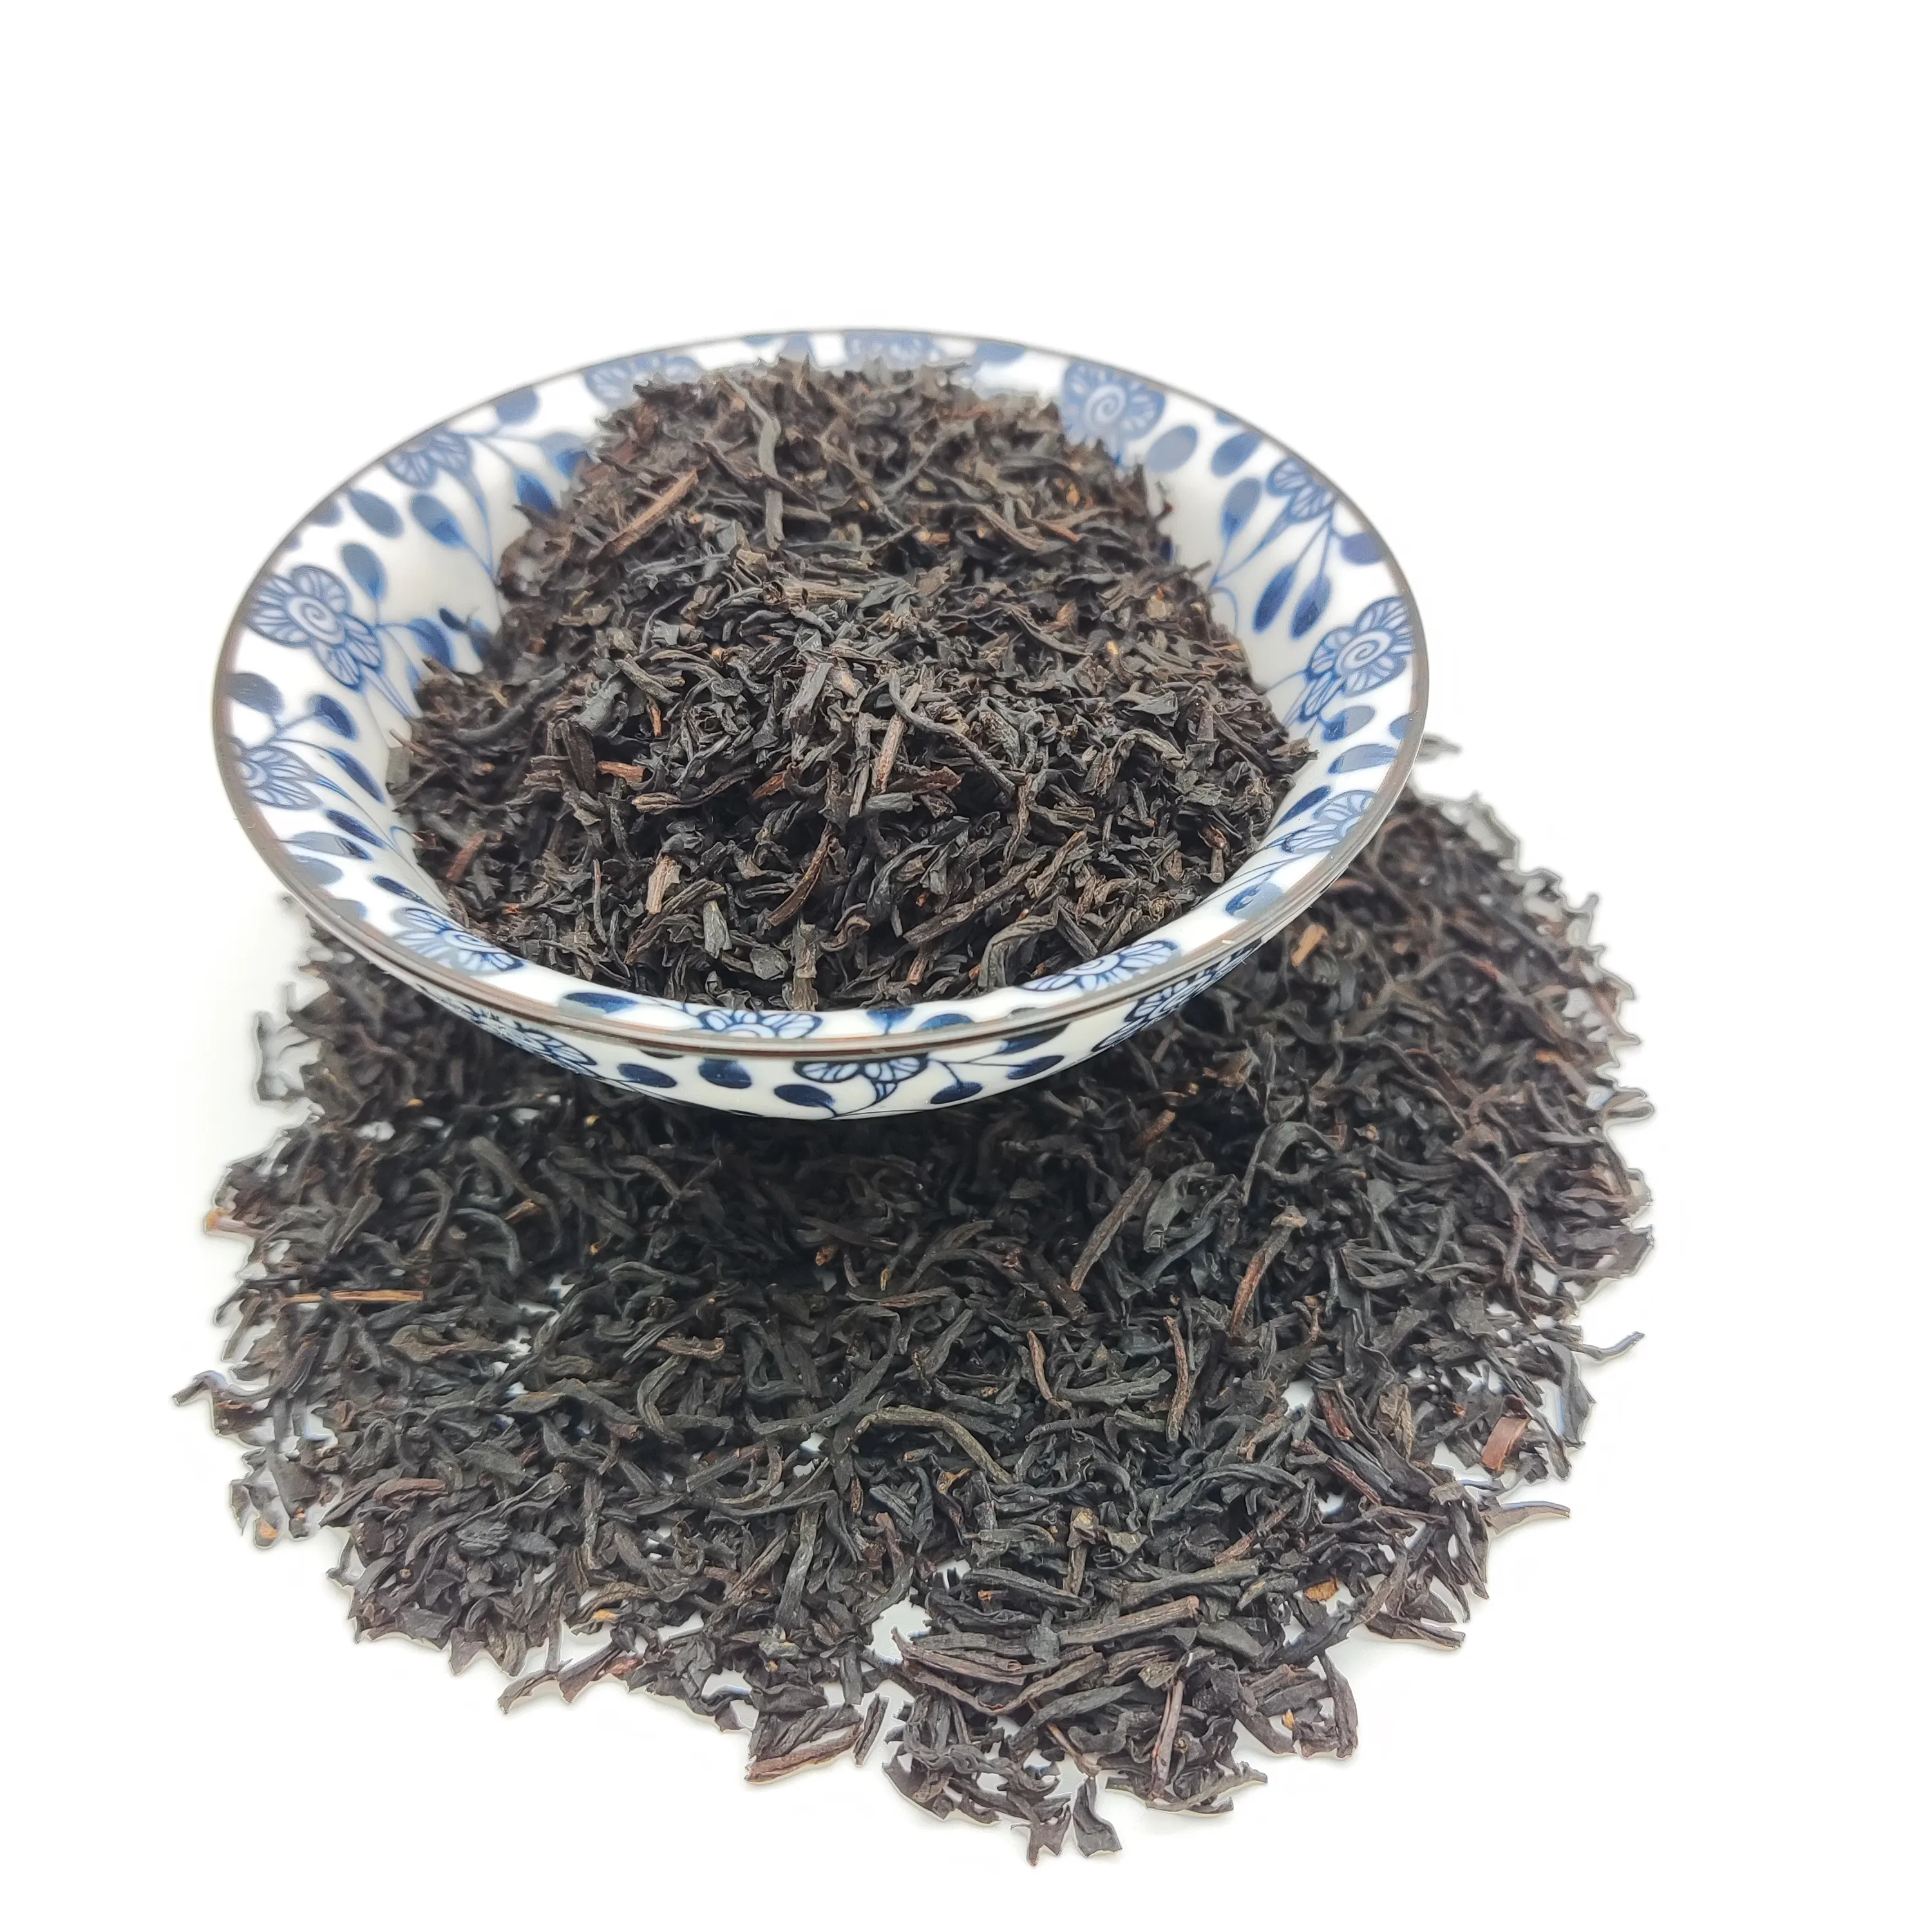 למעלה כיתה ארל גריי ברגמוט שחור תה ריחני שחור תה מפעל מחיר מקסים t Foshougan שחור תה